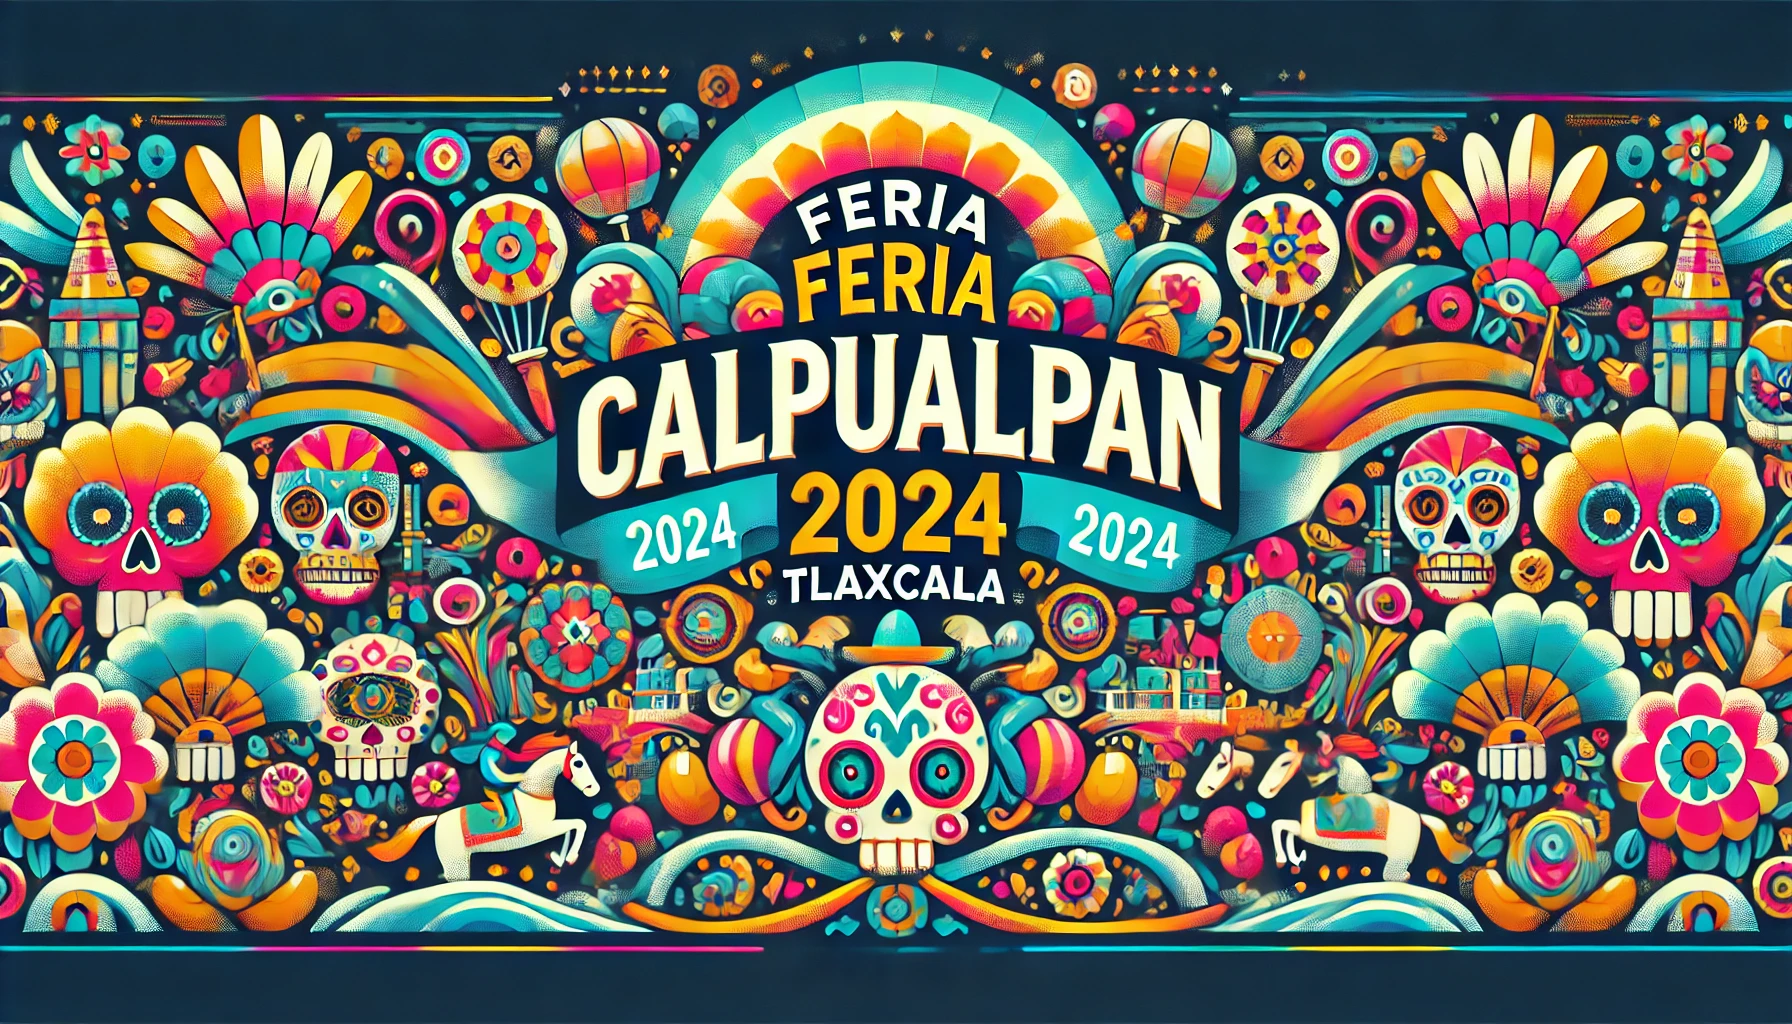 Programación de Eventos de la Feria Calpulalpan 2024: Programa Completo de Artistas, Fechas y Precio de los Boletos